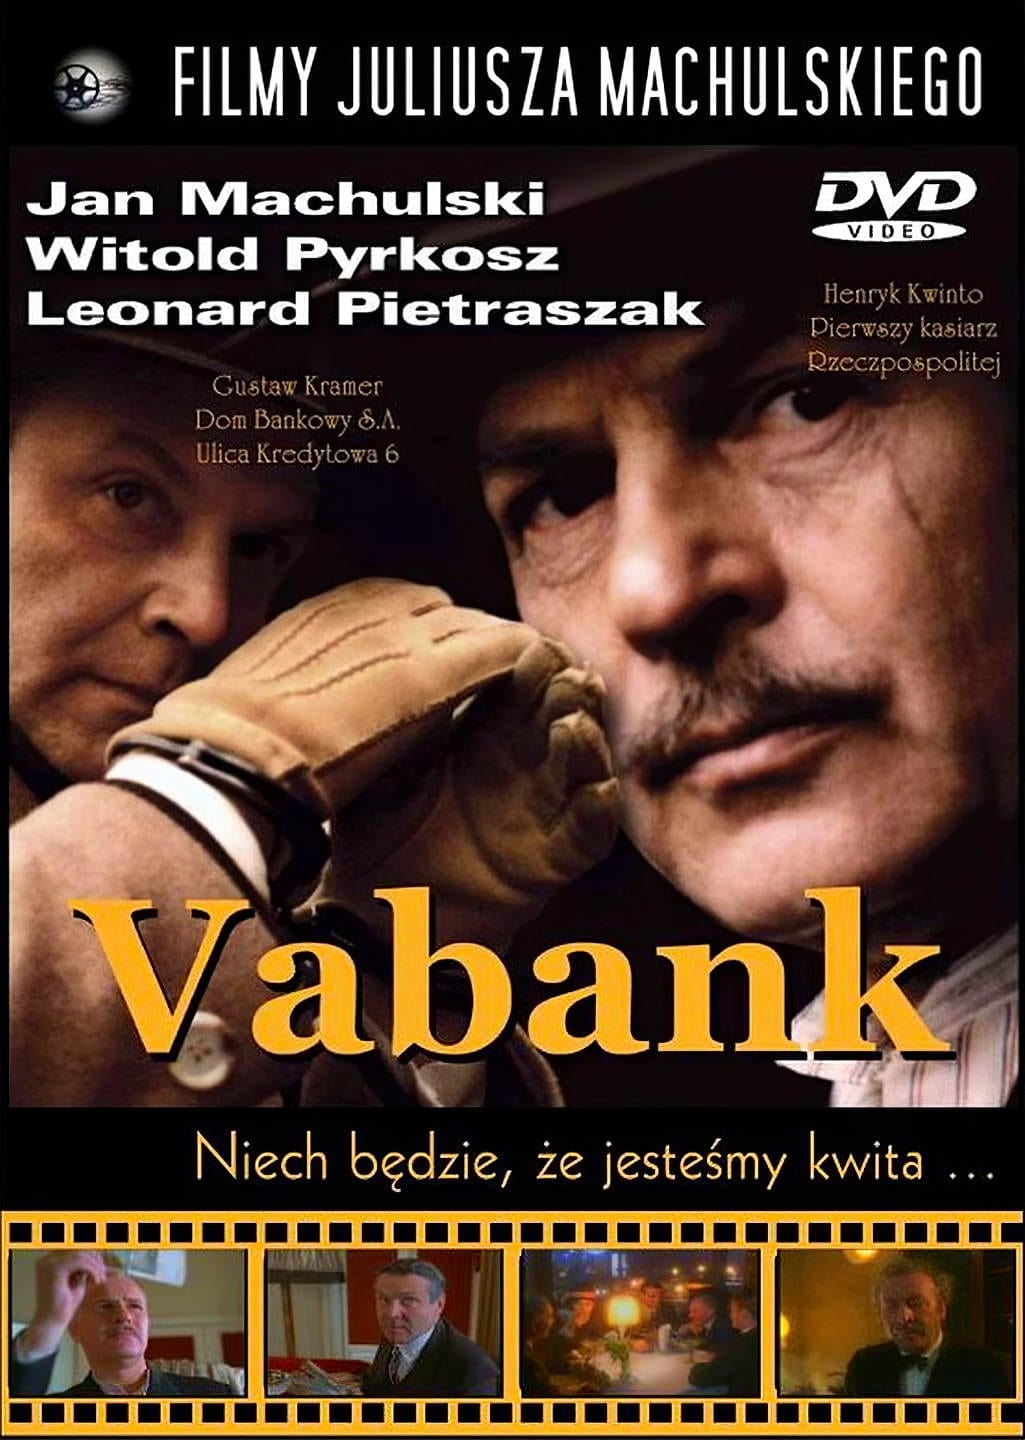 دانلود صوت دوبله فیلم Vabank 1981